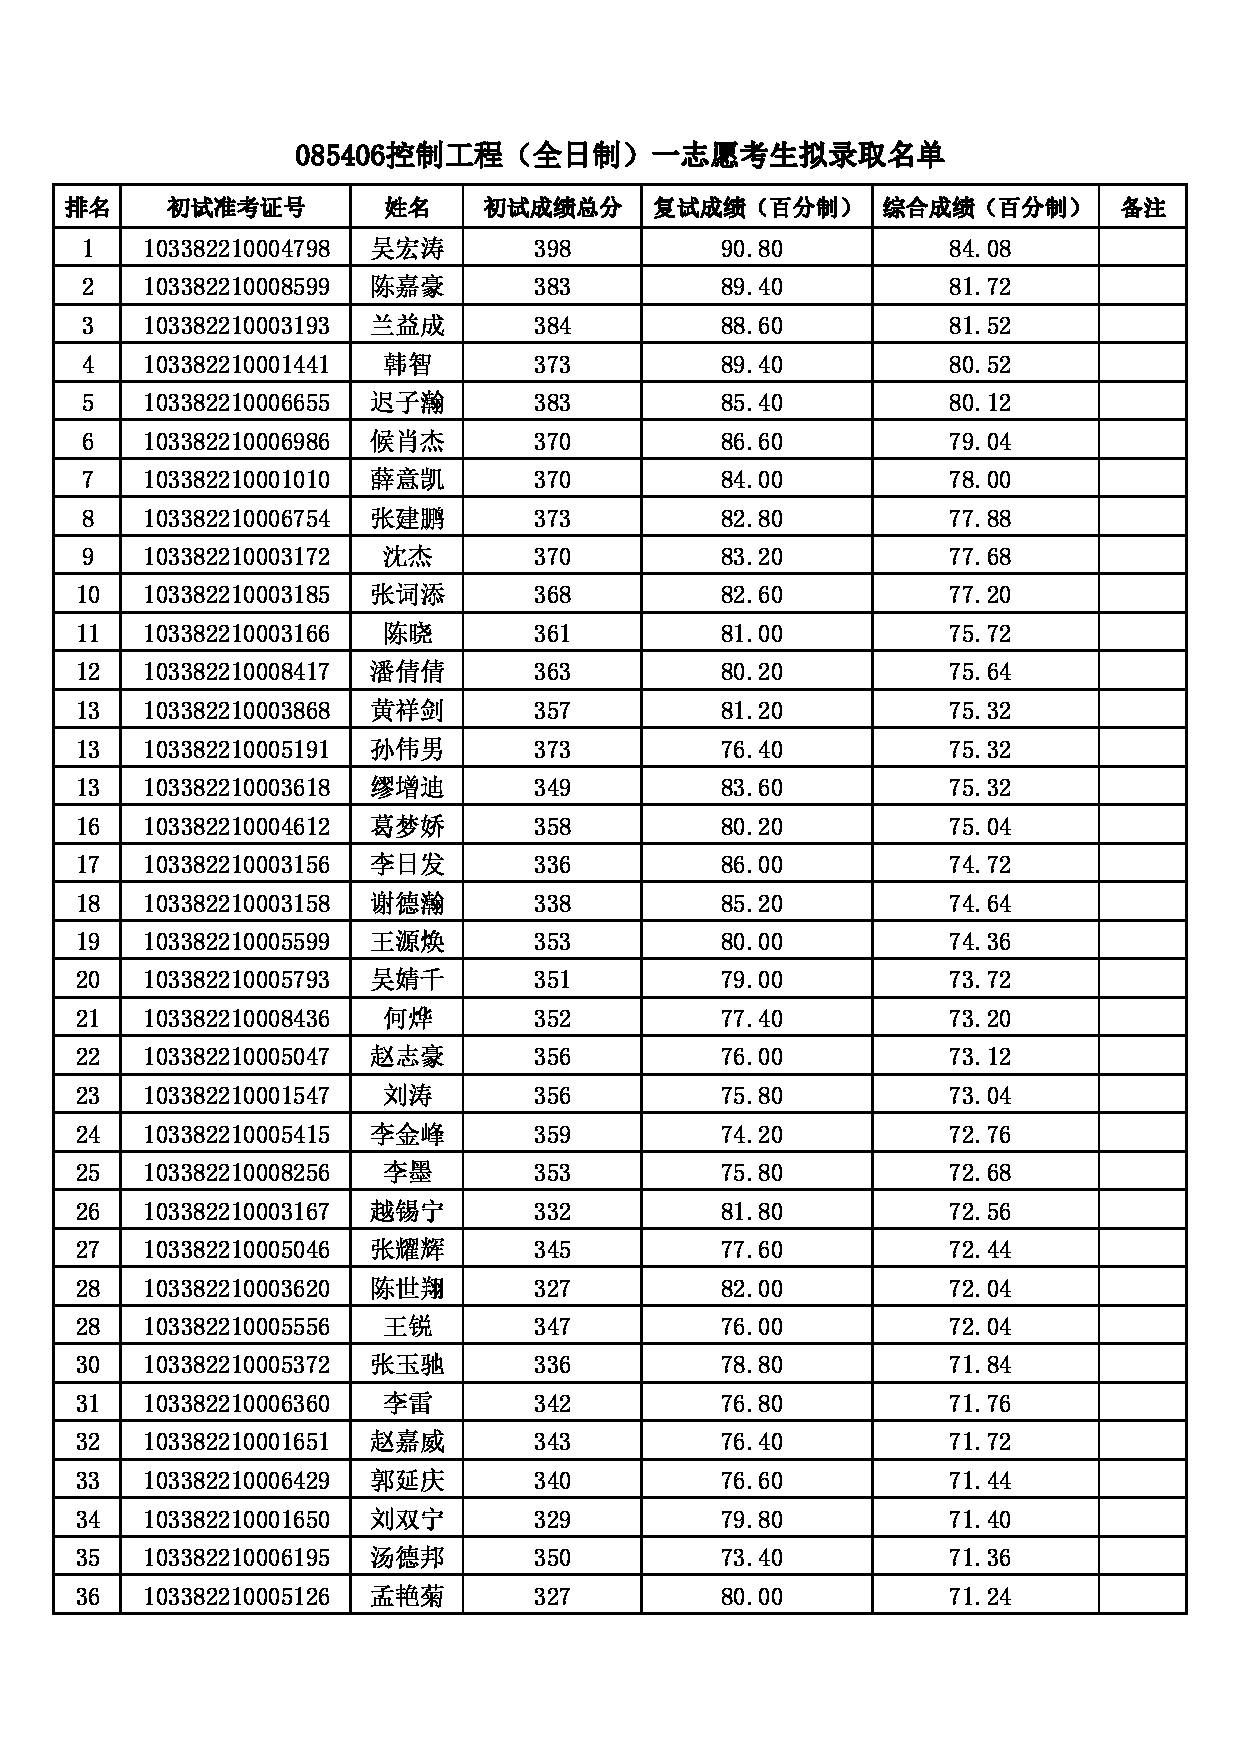 2022考研拟录取名单：浙江理工大学2022年 085406控制工程一志愿考生拟录取名单第1页